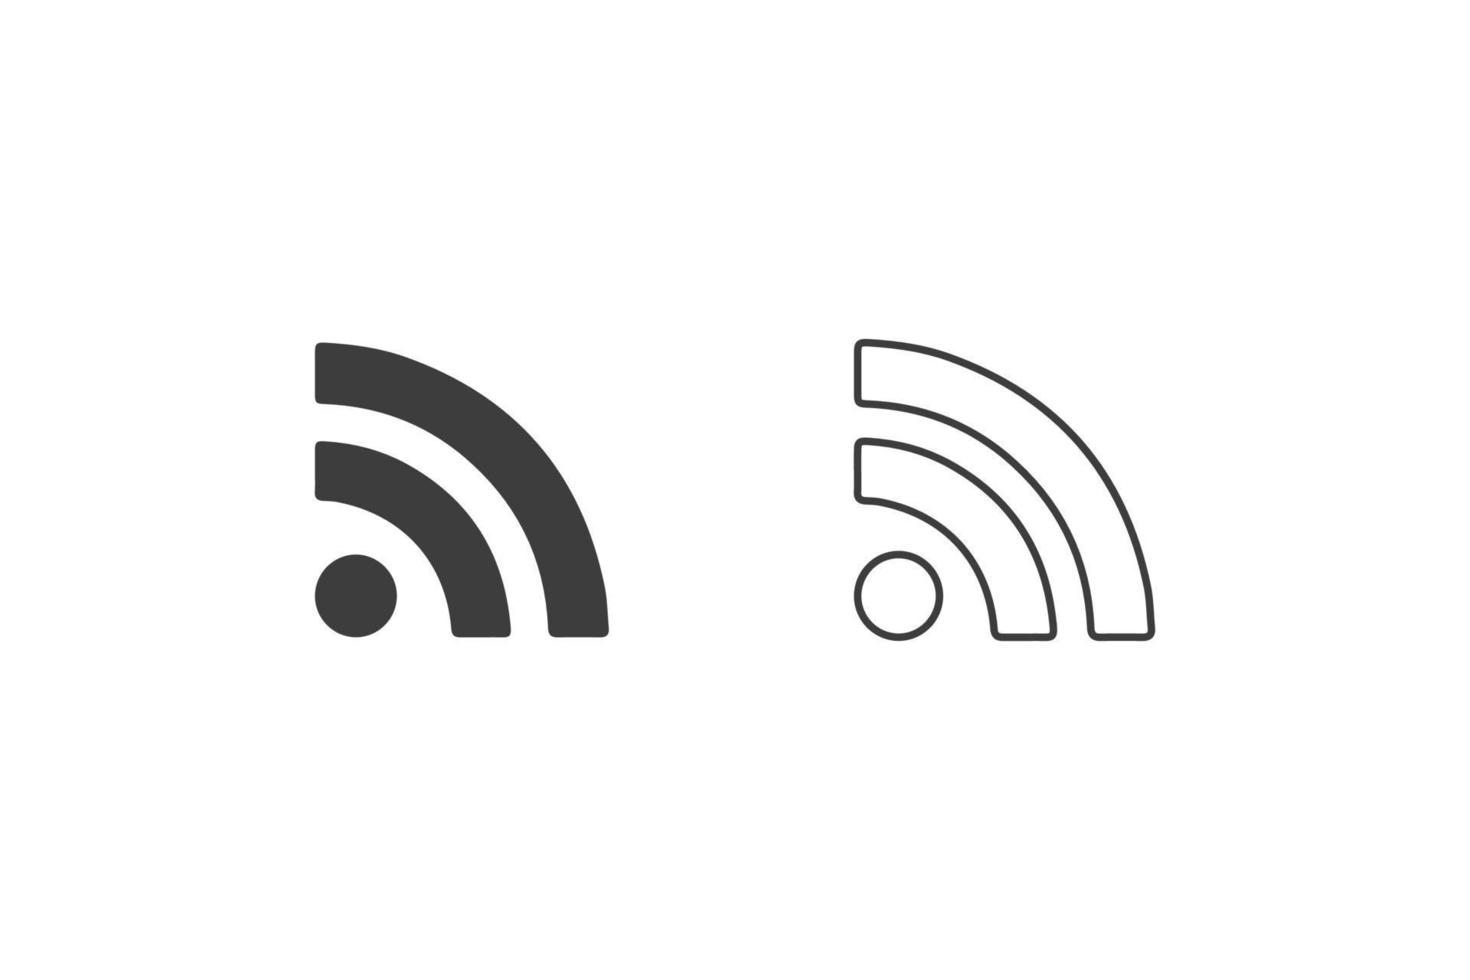 WLAN-Symbole flaches Design oder WLAN-Symbole. 2 Arten von WLAN-Symbolen isoliert auf weißem Hintergrund. WLAN auf dem Handy. vektor